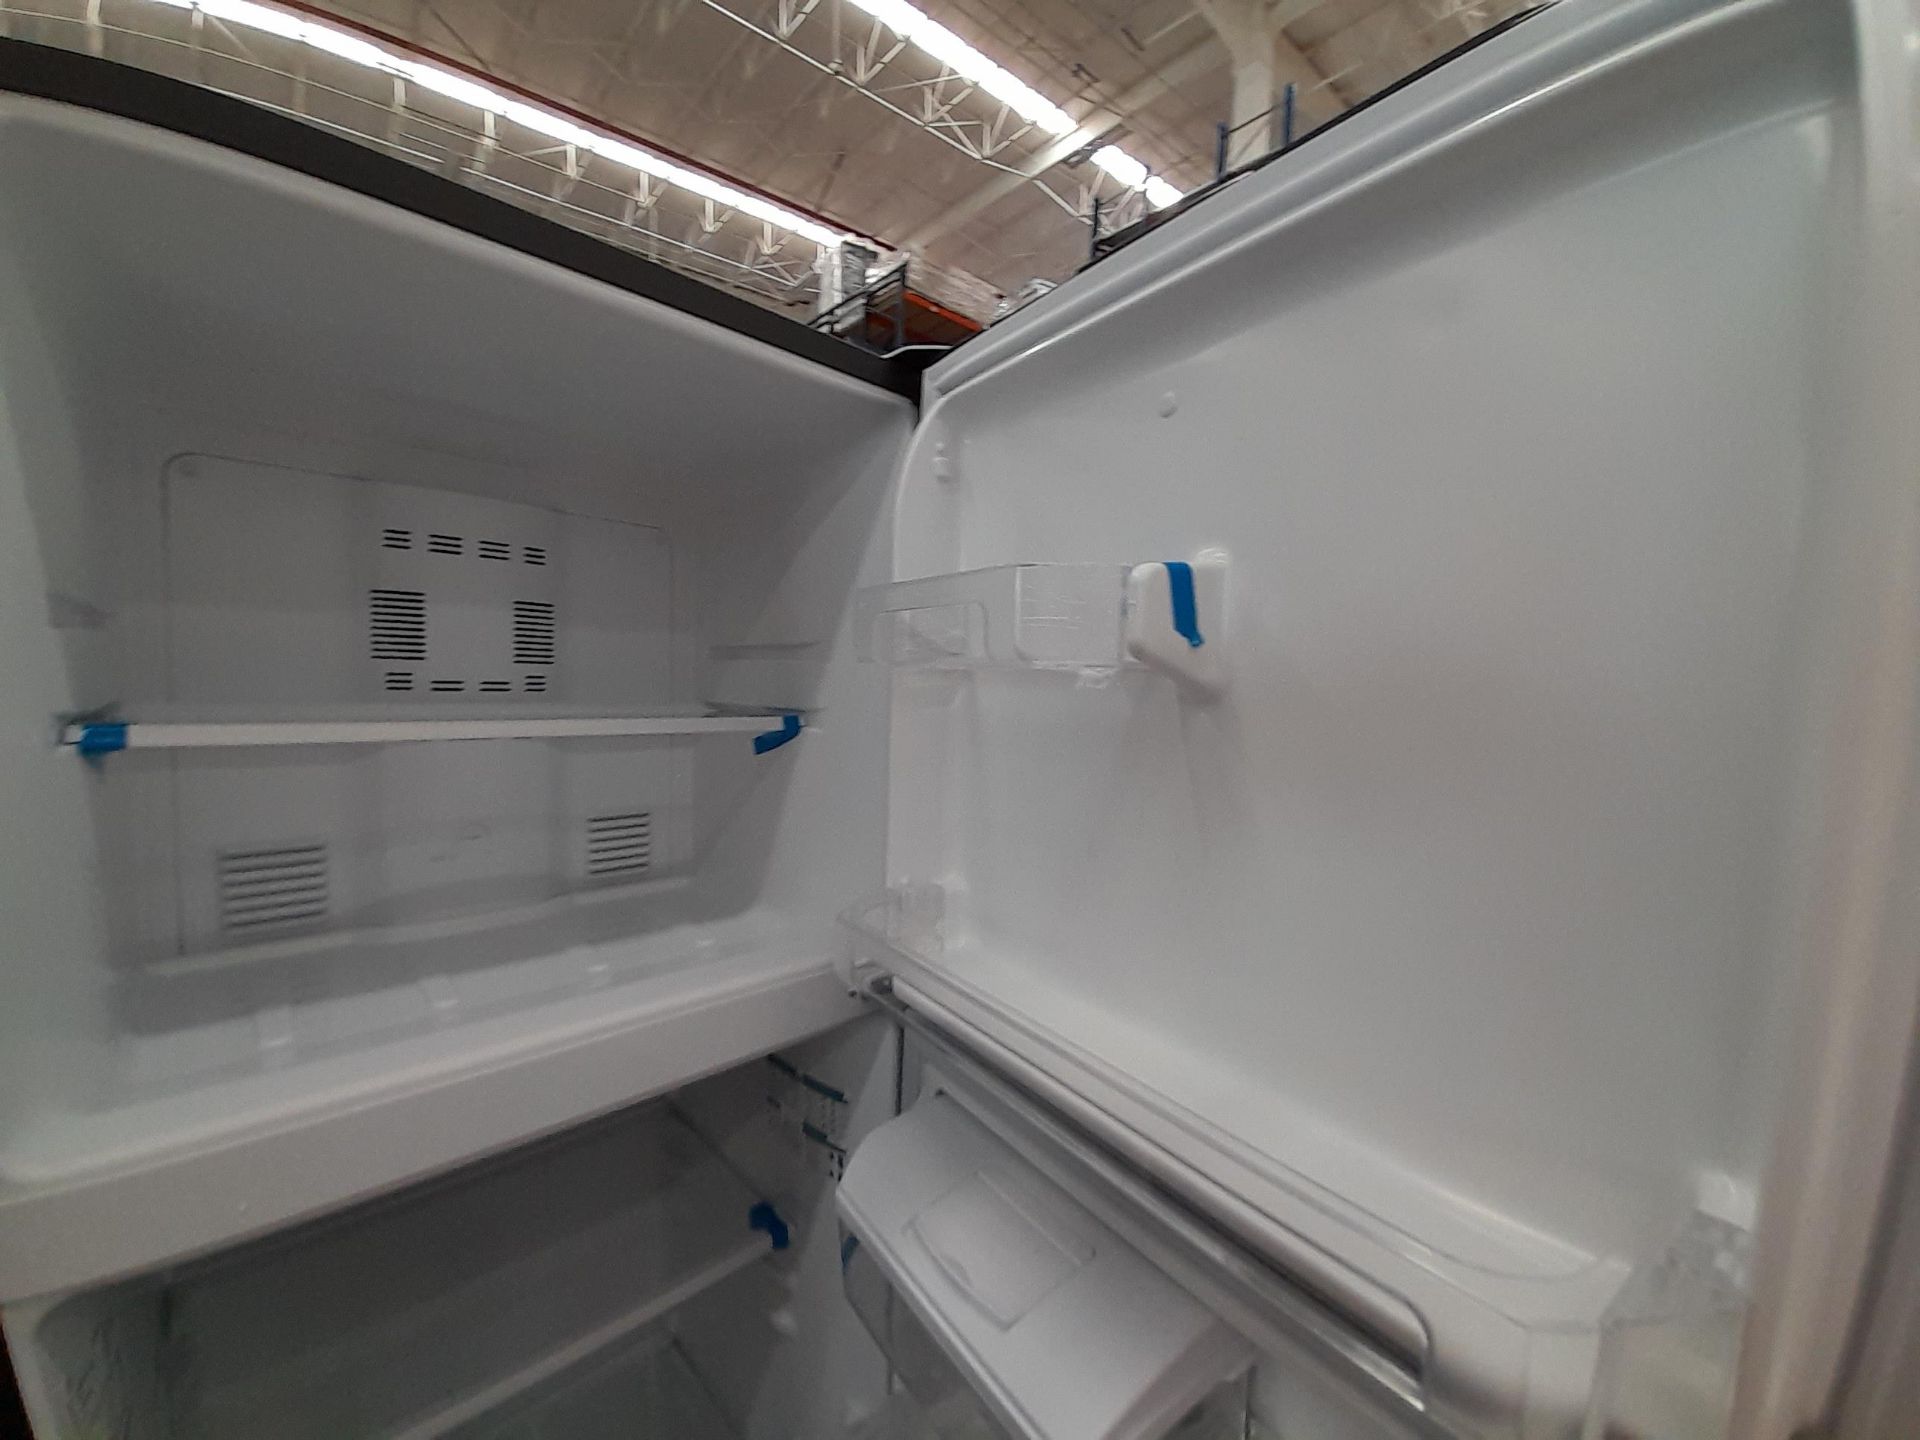 Lote de 2 Refrigeradores contiene: 1 Refrigerador con dispensador de agua Marca MABE, Modelo RMA300 - Image 6 of 8